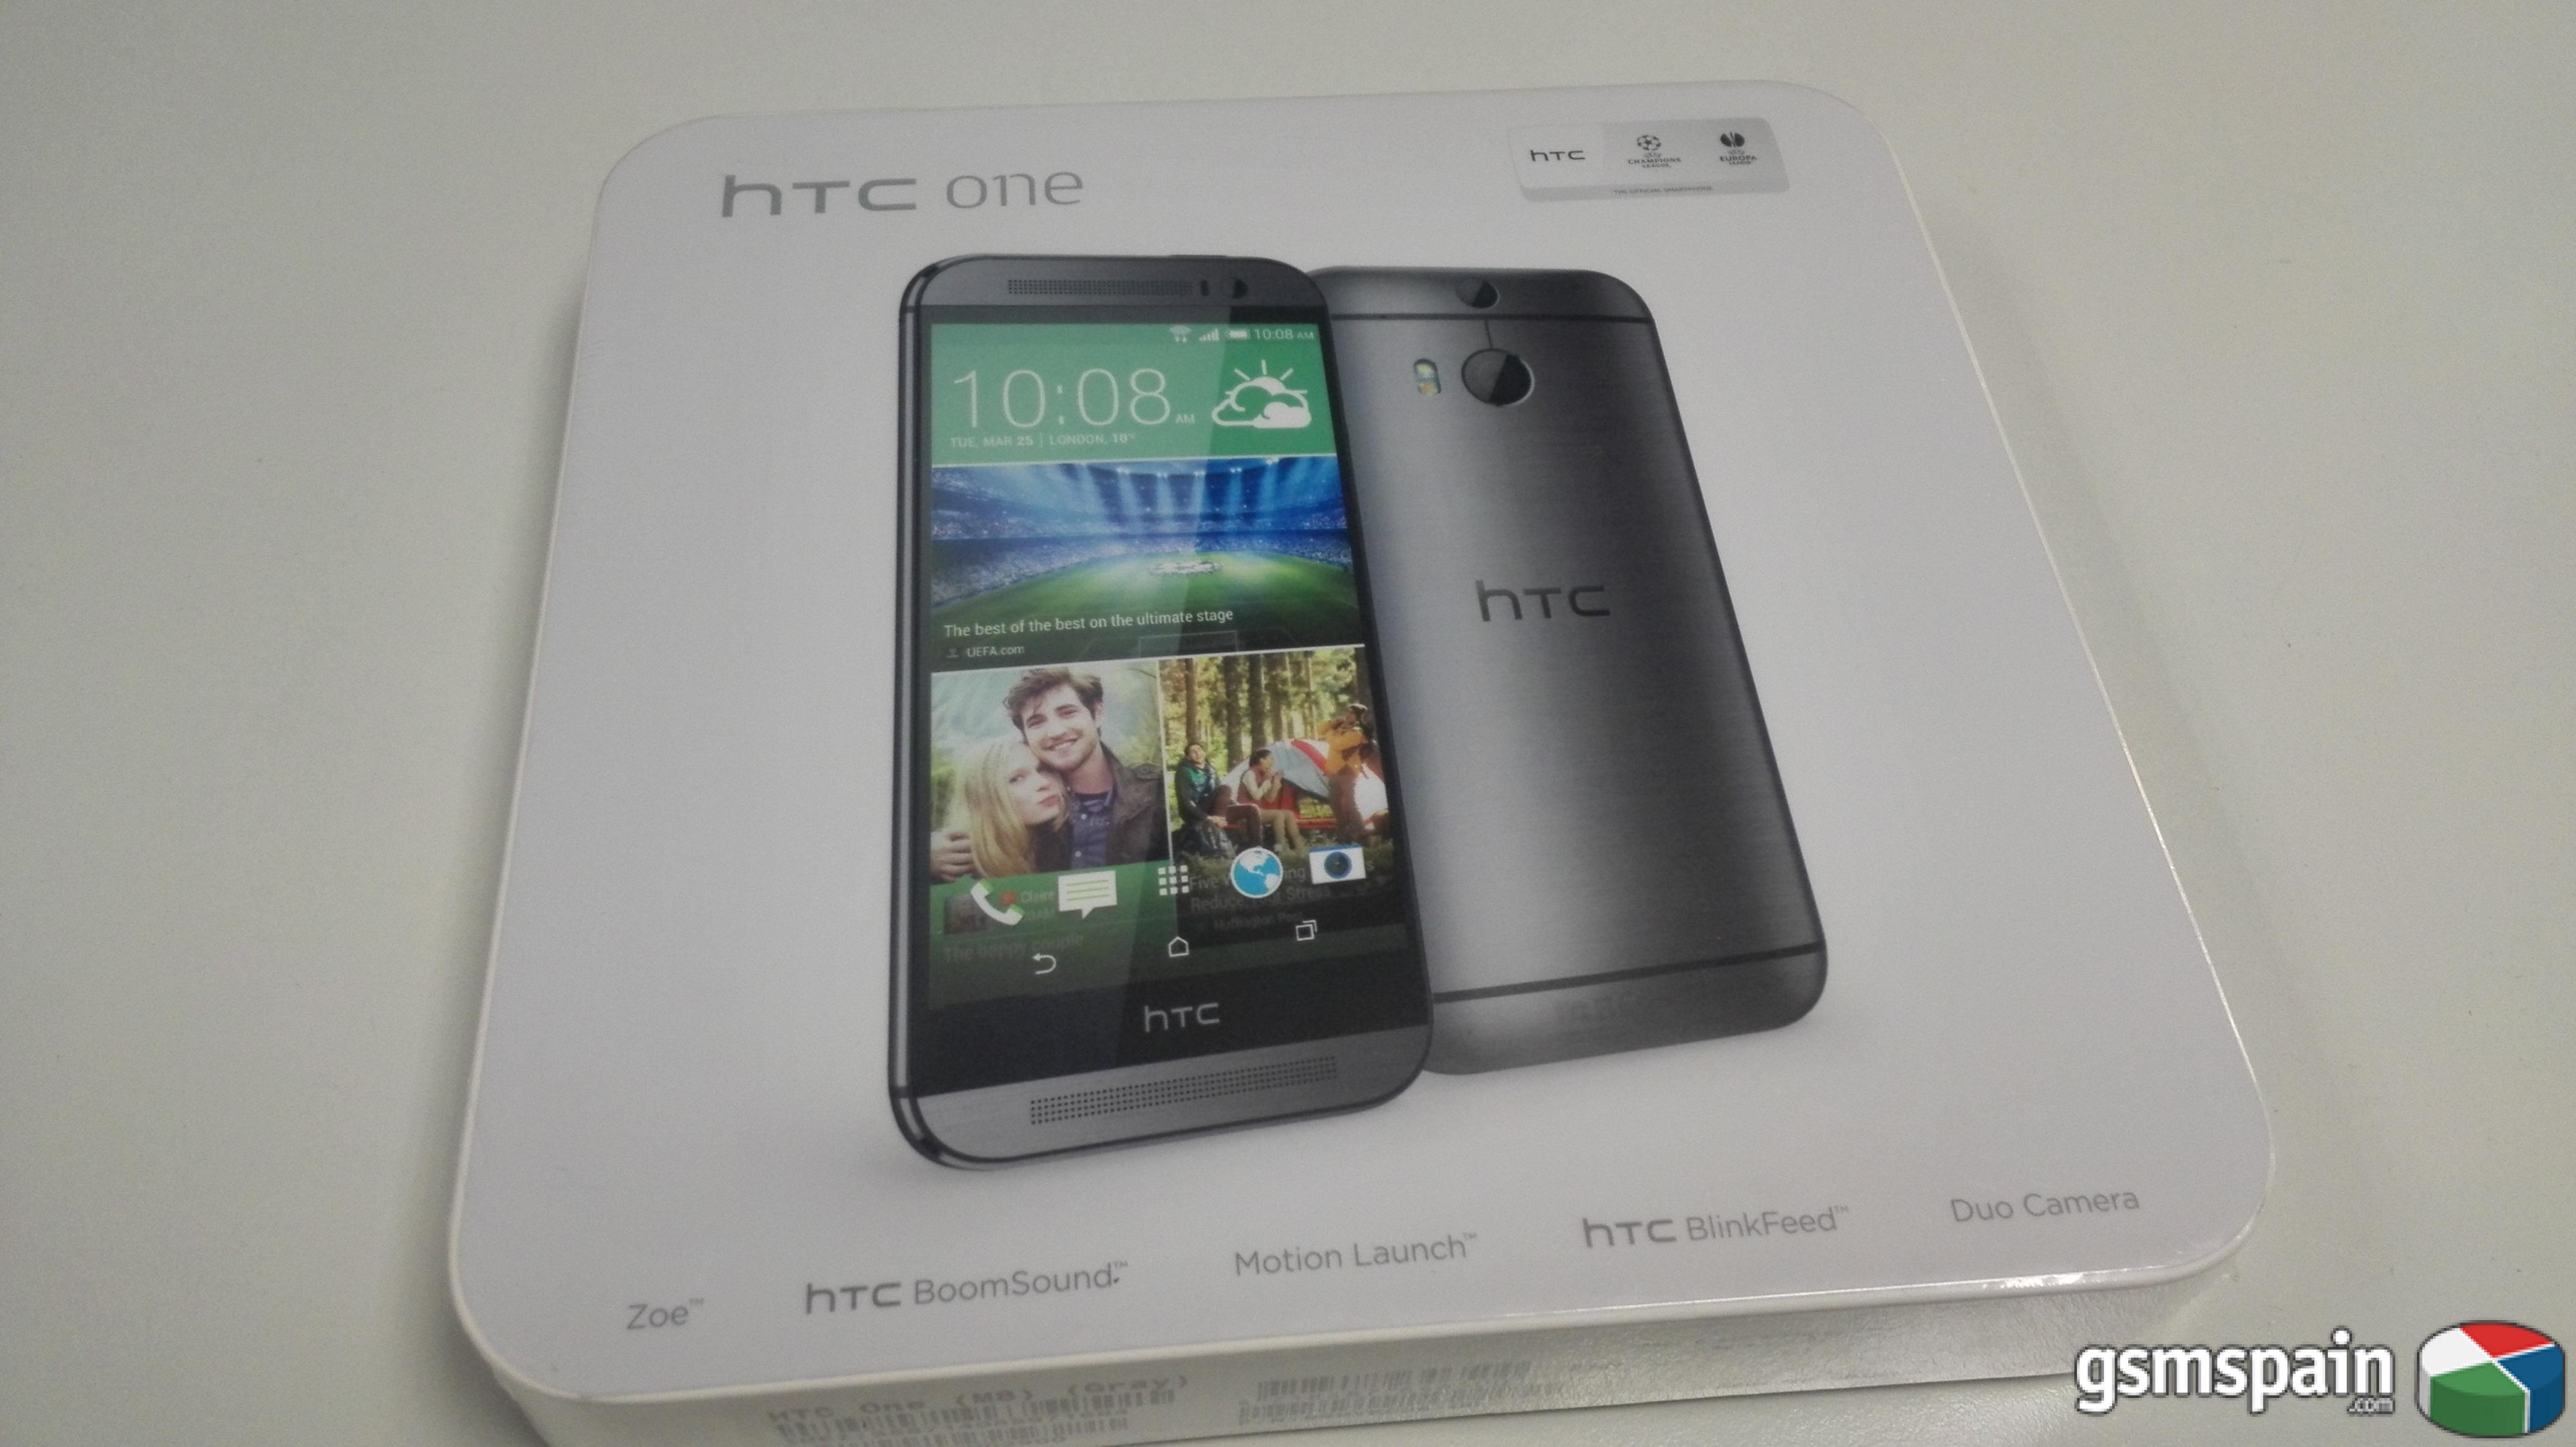 [VENDO] -------   HTC one M8 + Libre + Precintado  -------